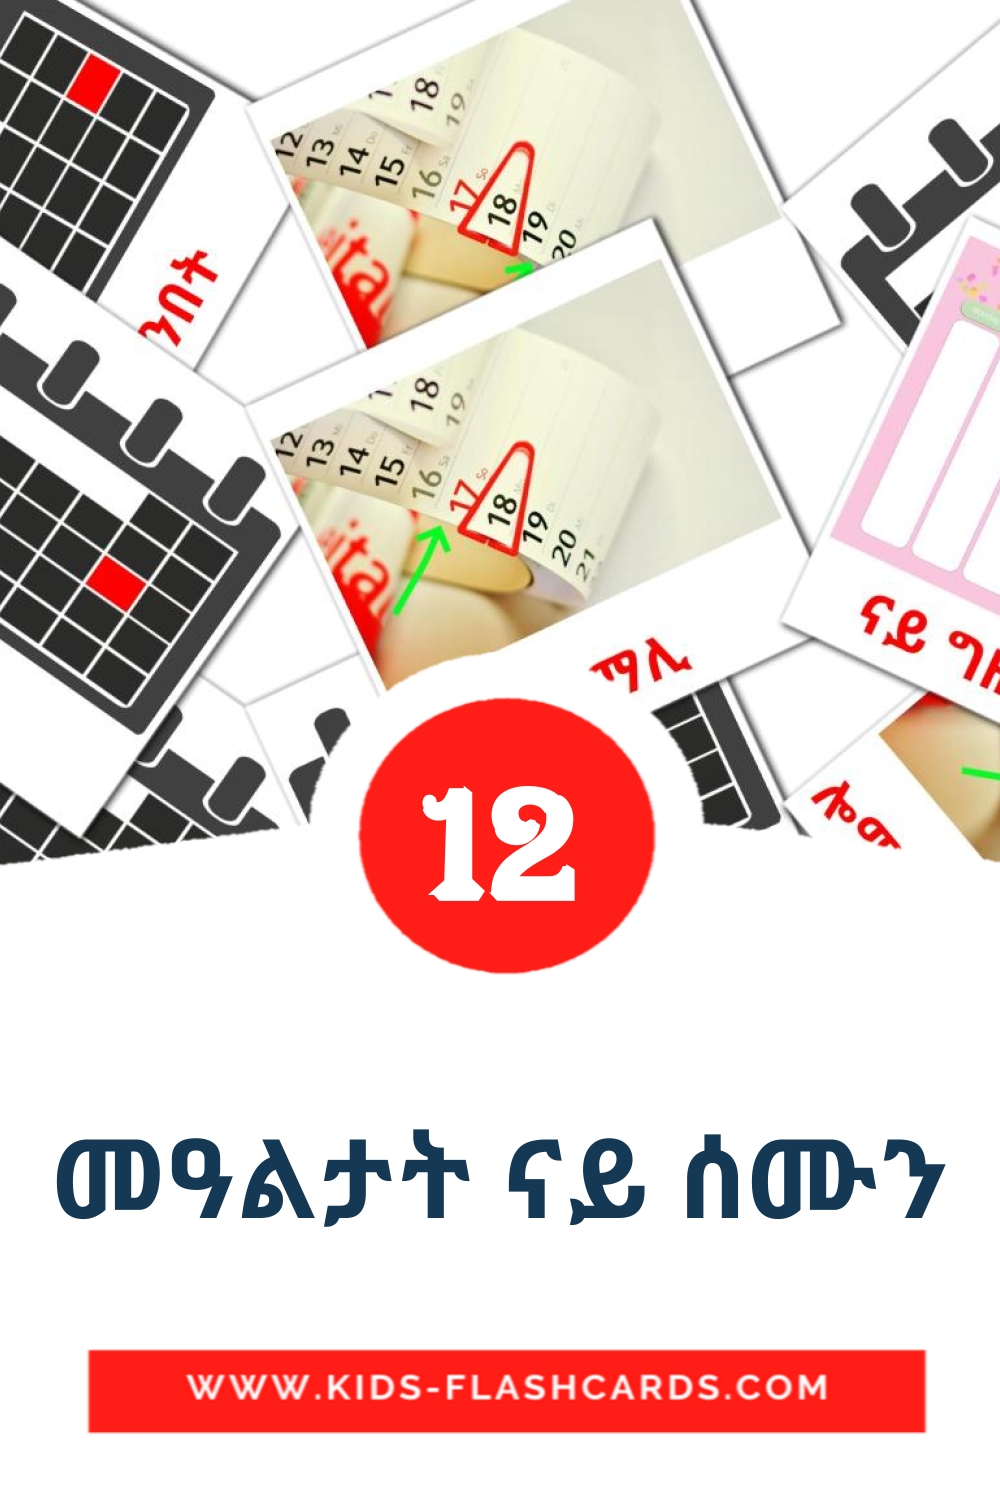 12 carte illustrate di መዓልታት ናይ ሰሙን per la scuola materna in tigrigna(Eritrea)